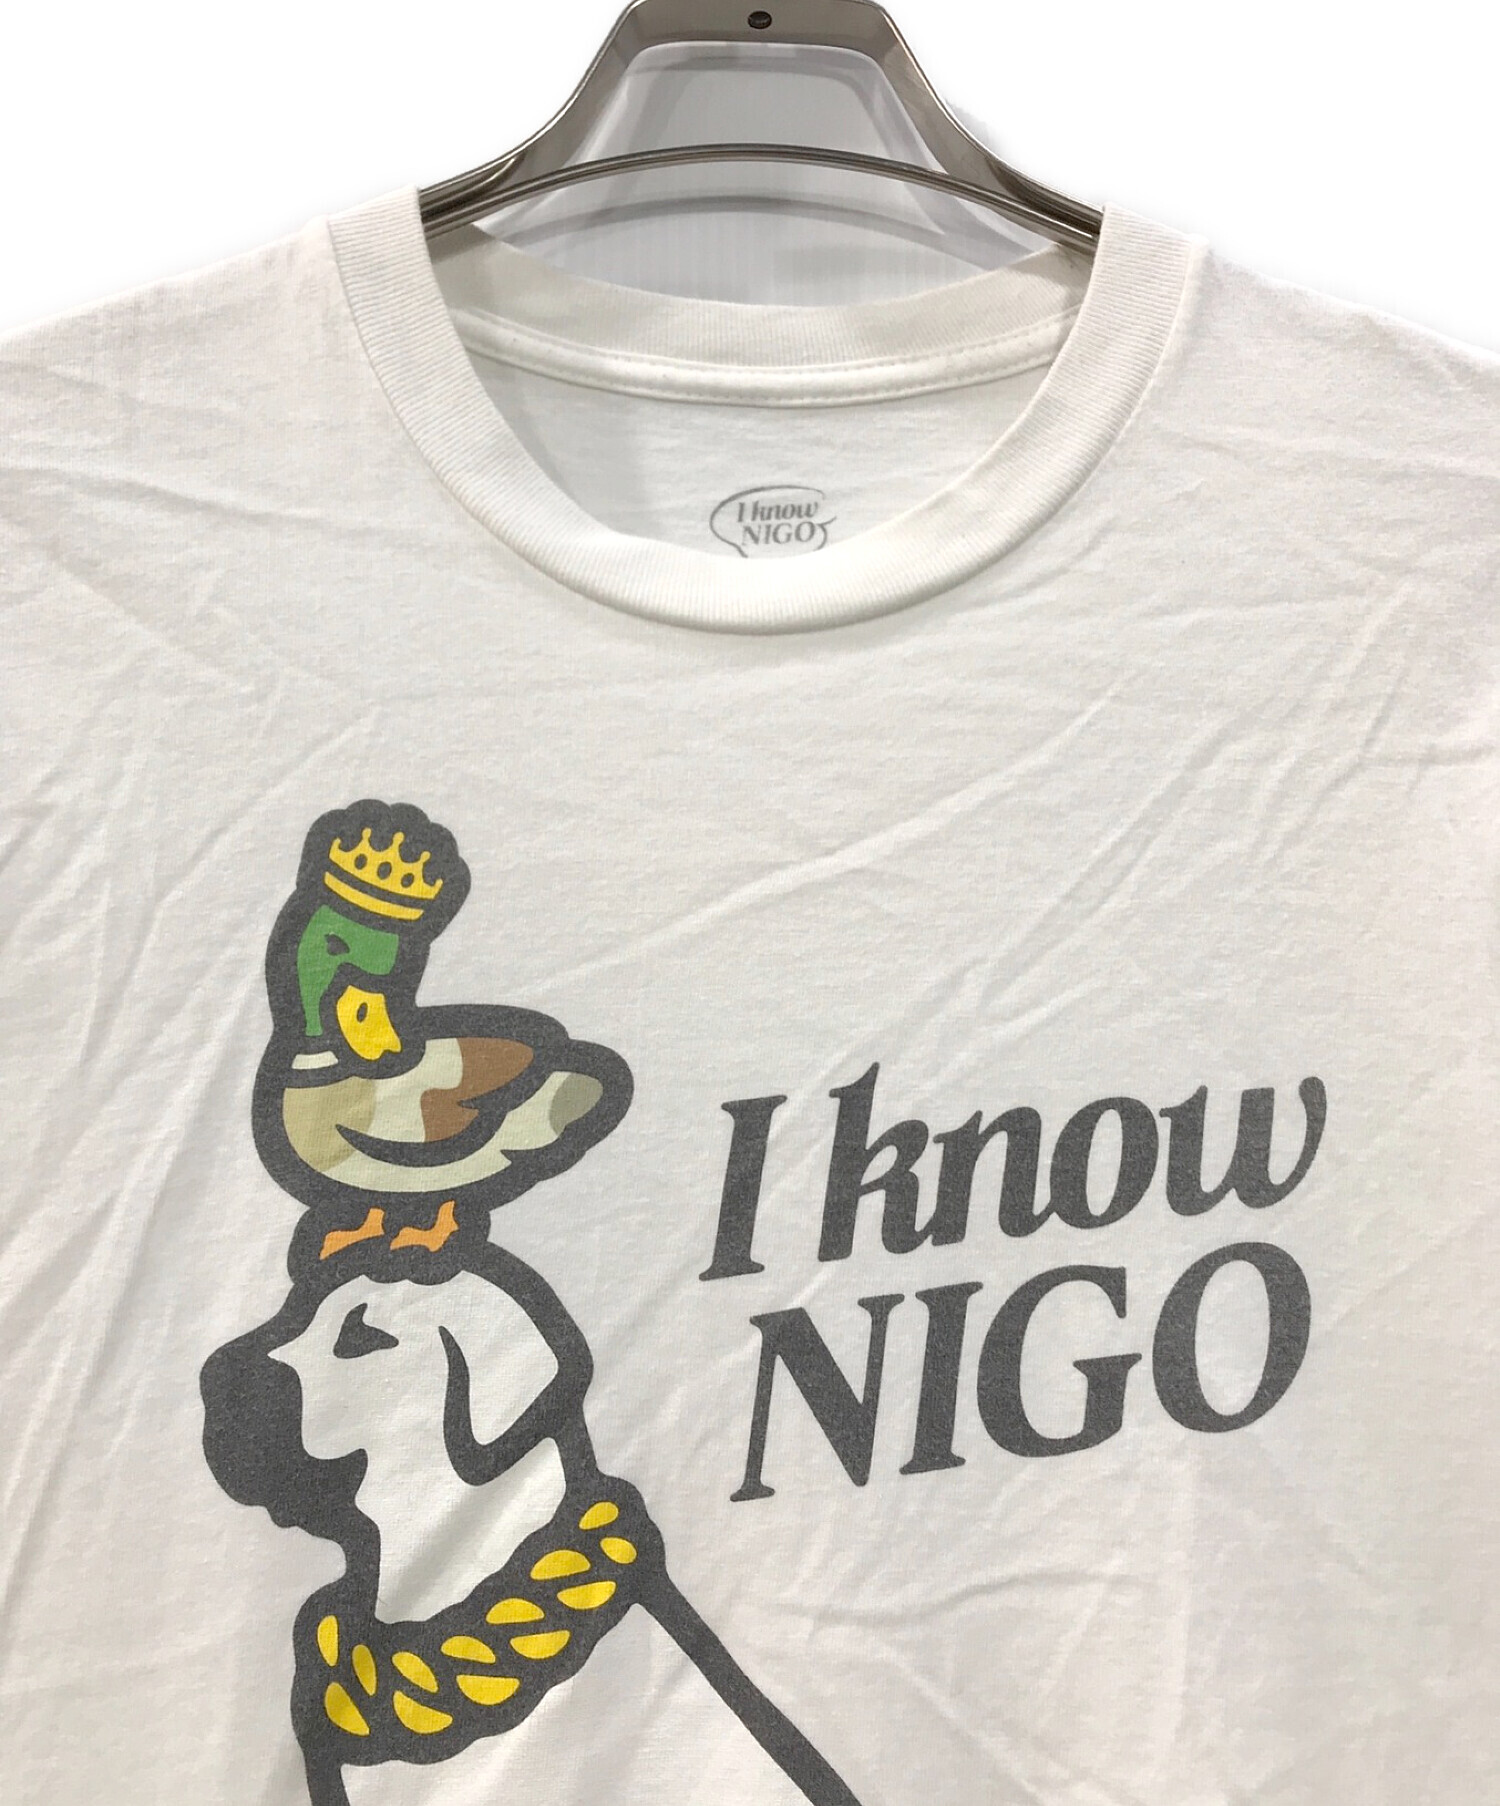 I KNOW NIGO (アイ ノウ ニゴー) Tシャツ ホワイト サイズ:M